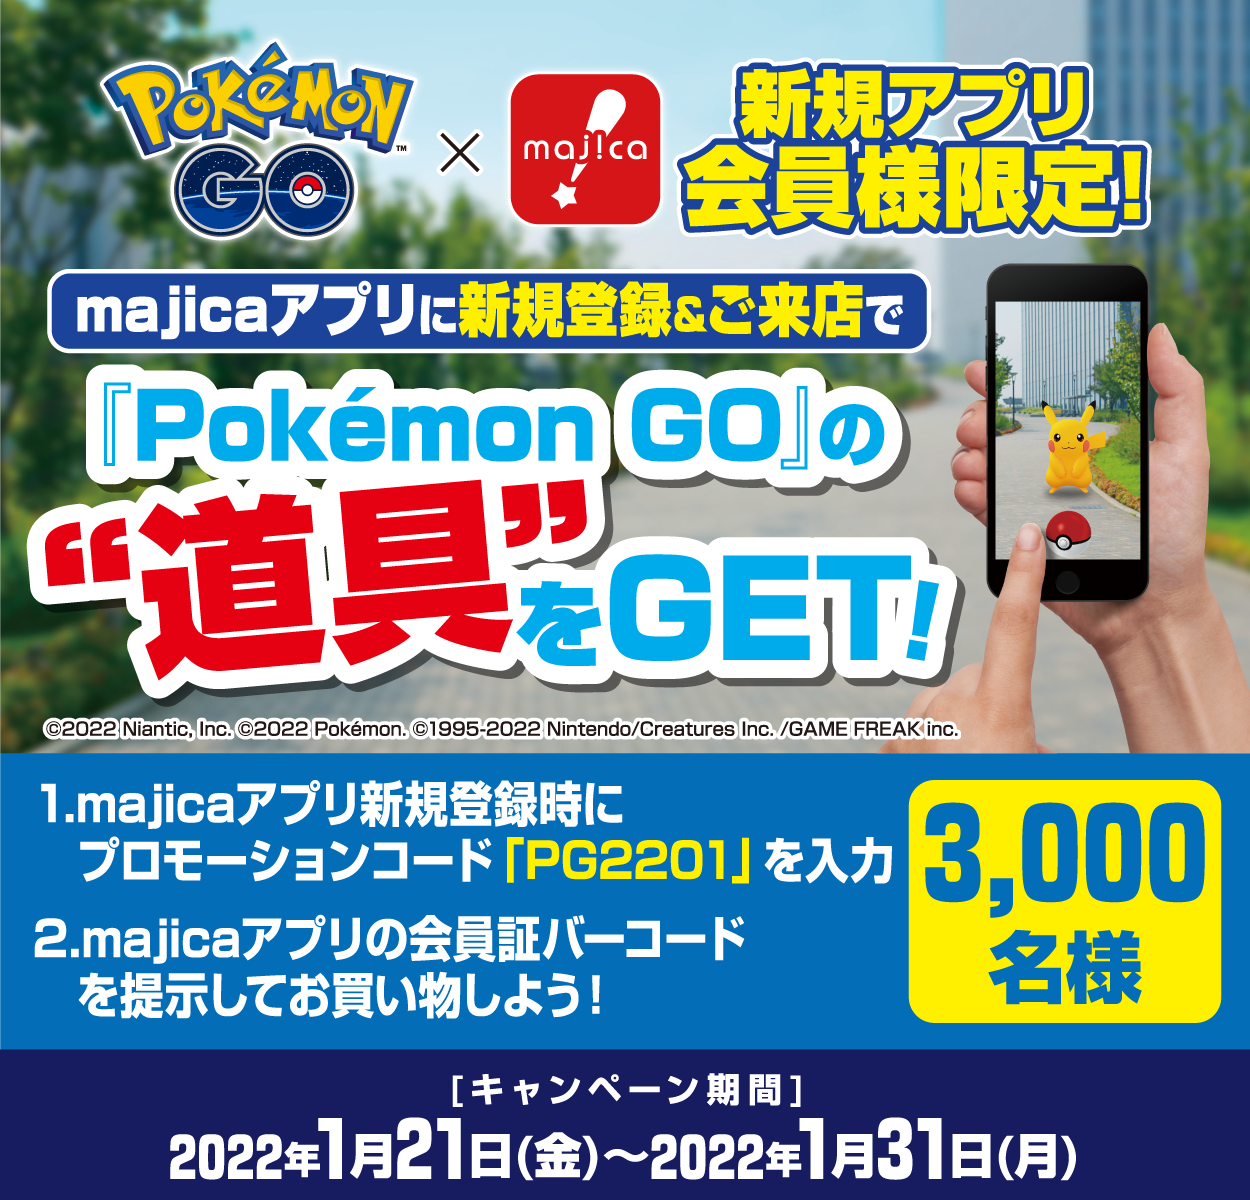 ドン・キホーテ『Pokémon GO』の道具プレゼントキャンペーン！アプリで買うと道具がもらえる！majicaアプリで1会計1,000円(税抜)以上ご購入すると、『Pokémon GO』内で使用できる道具のセットが抽選で30,000名様に当たる！